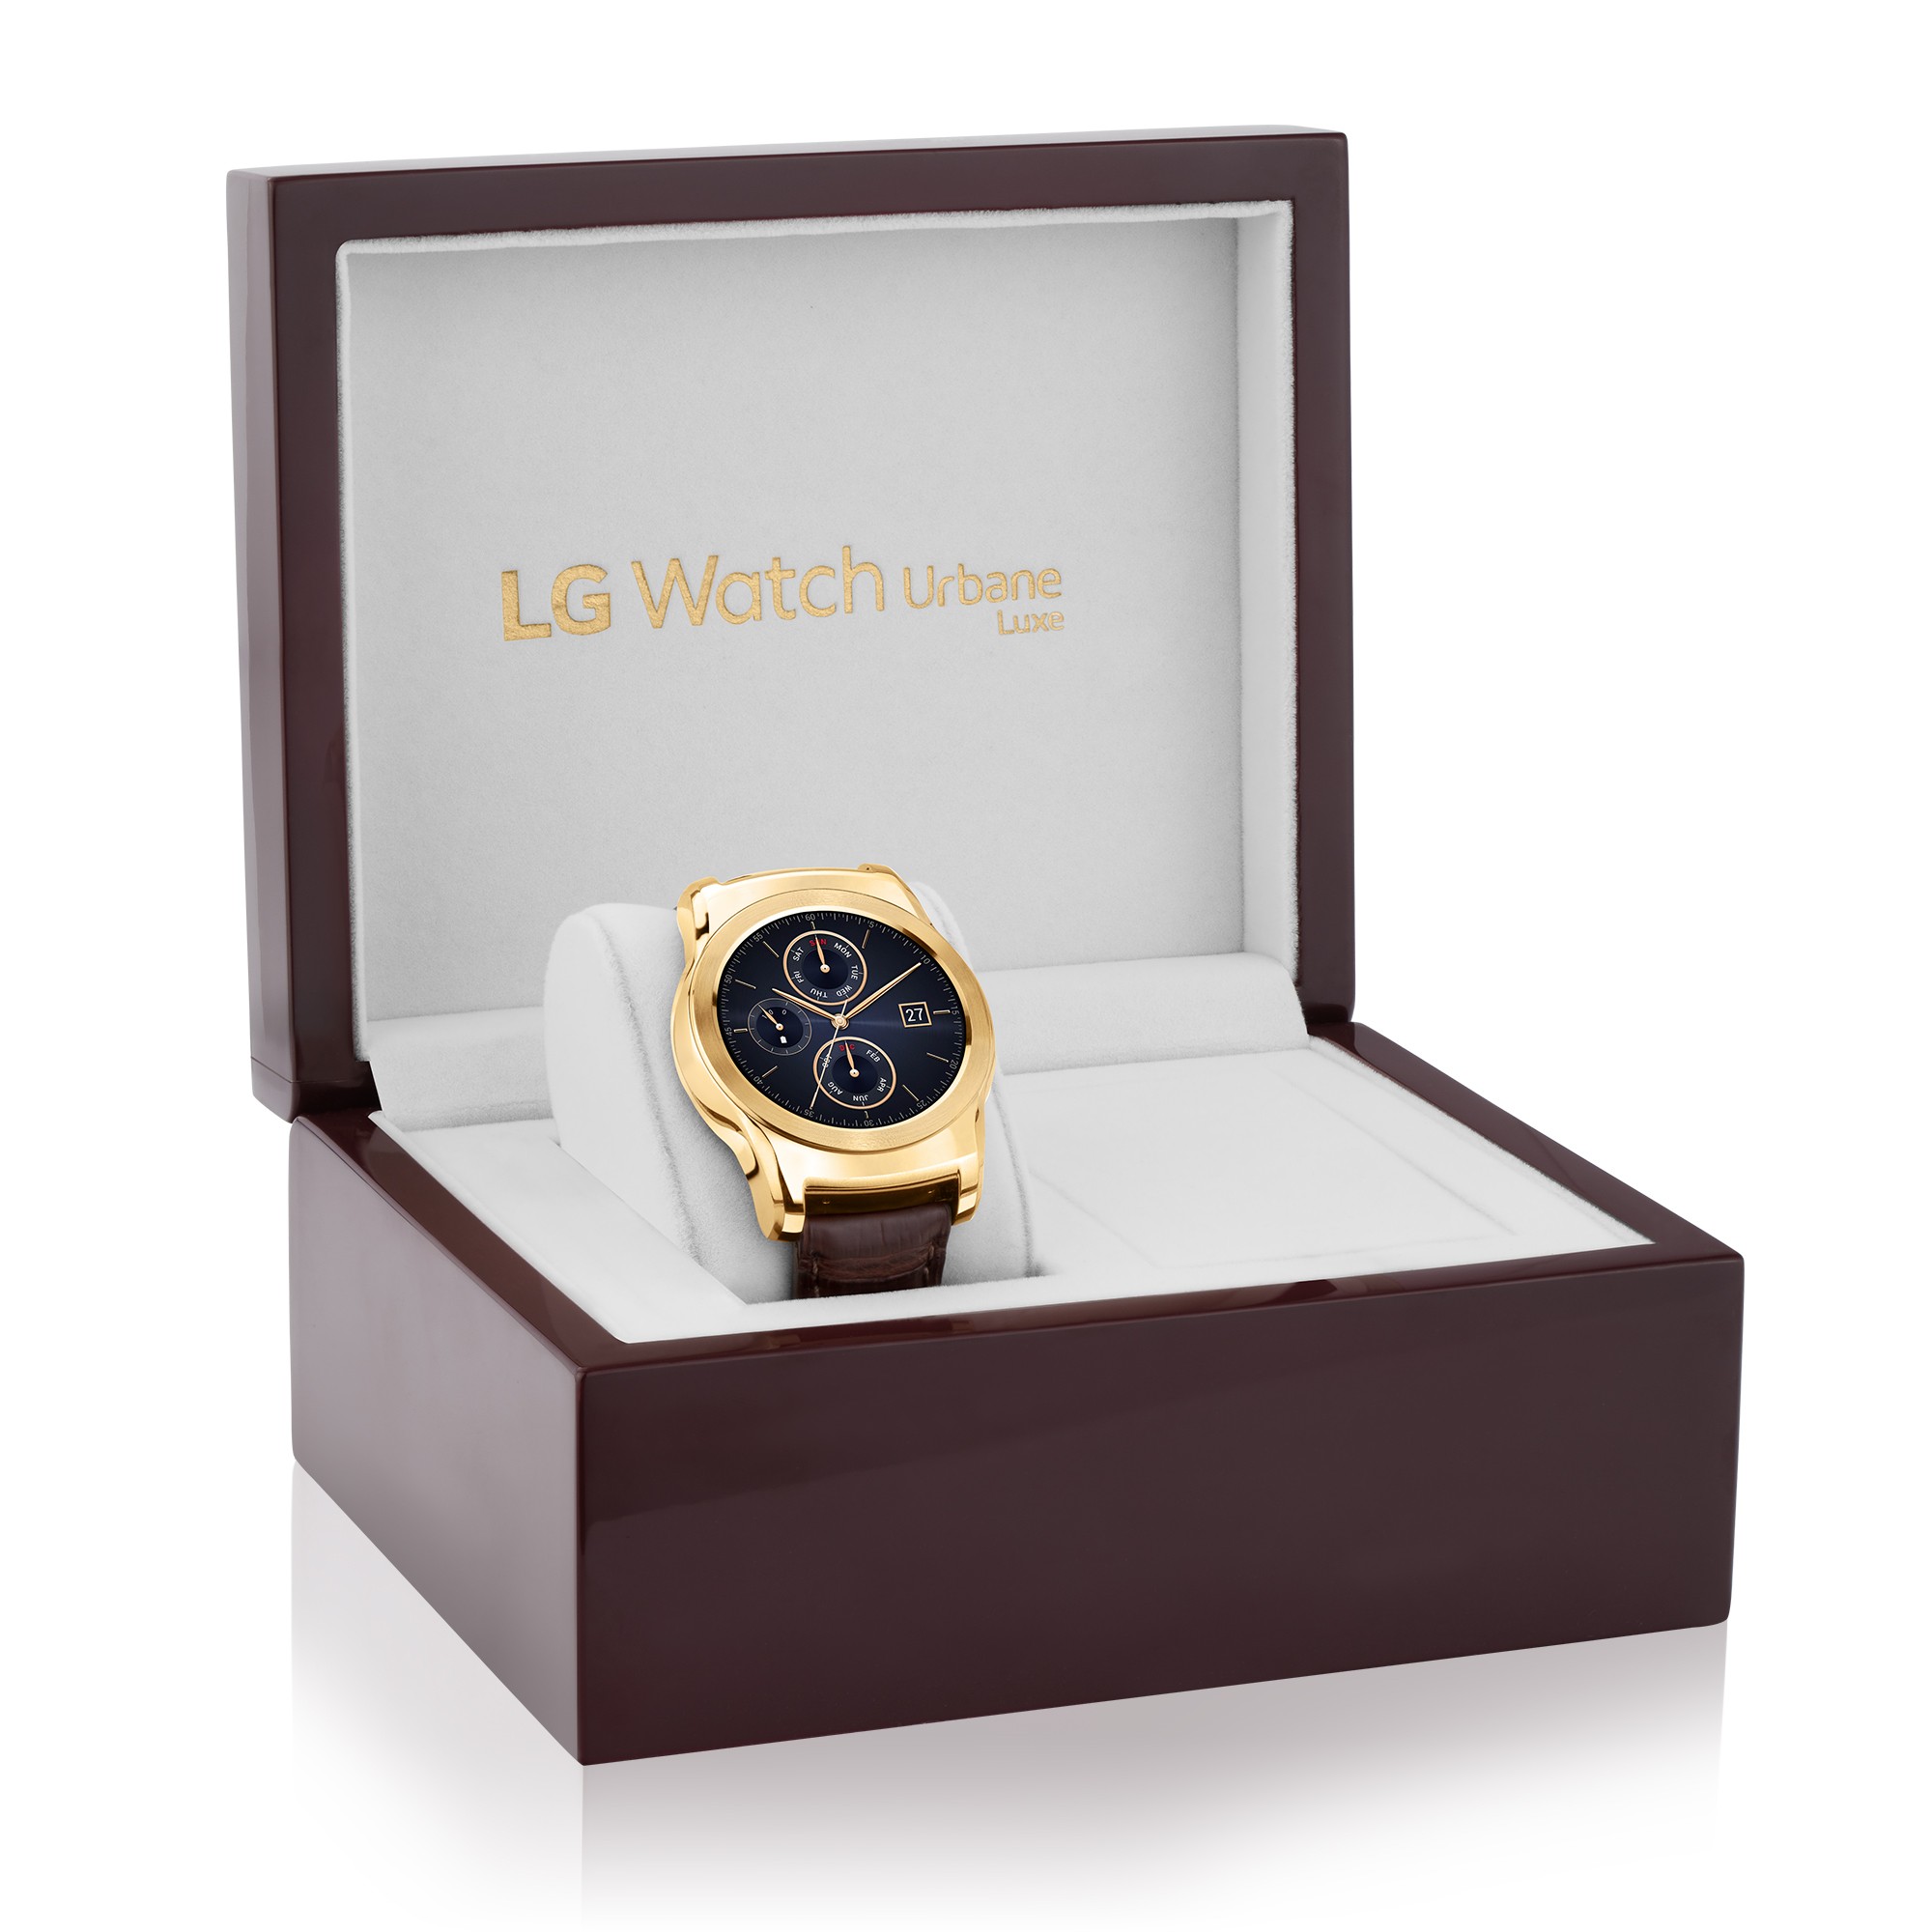 LG-Watch-Urbane-Luxe-Case.jpg